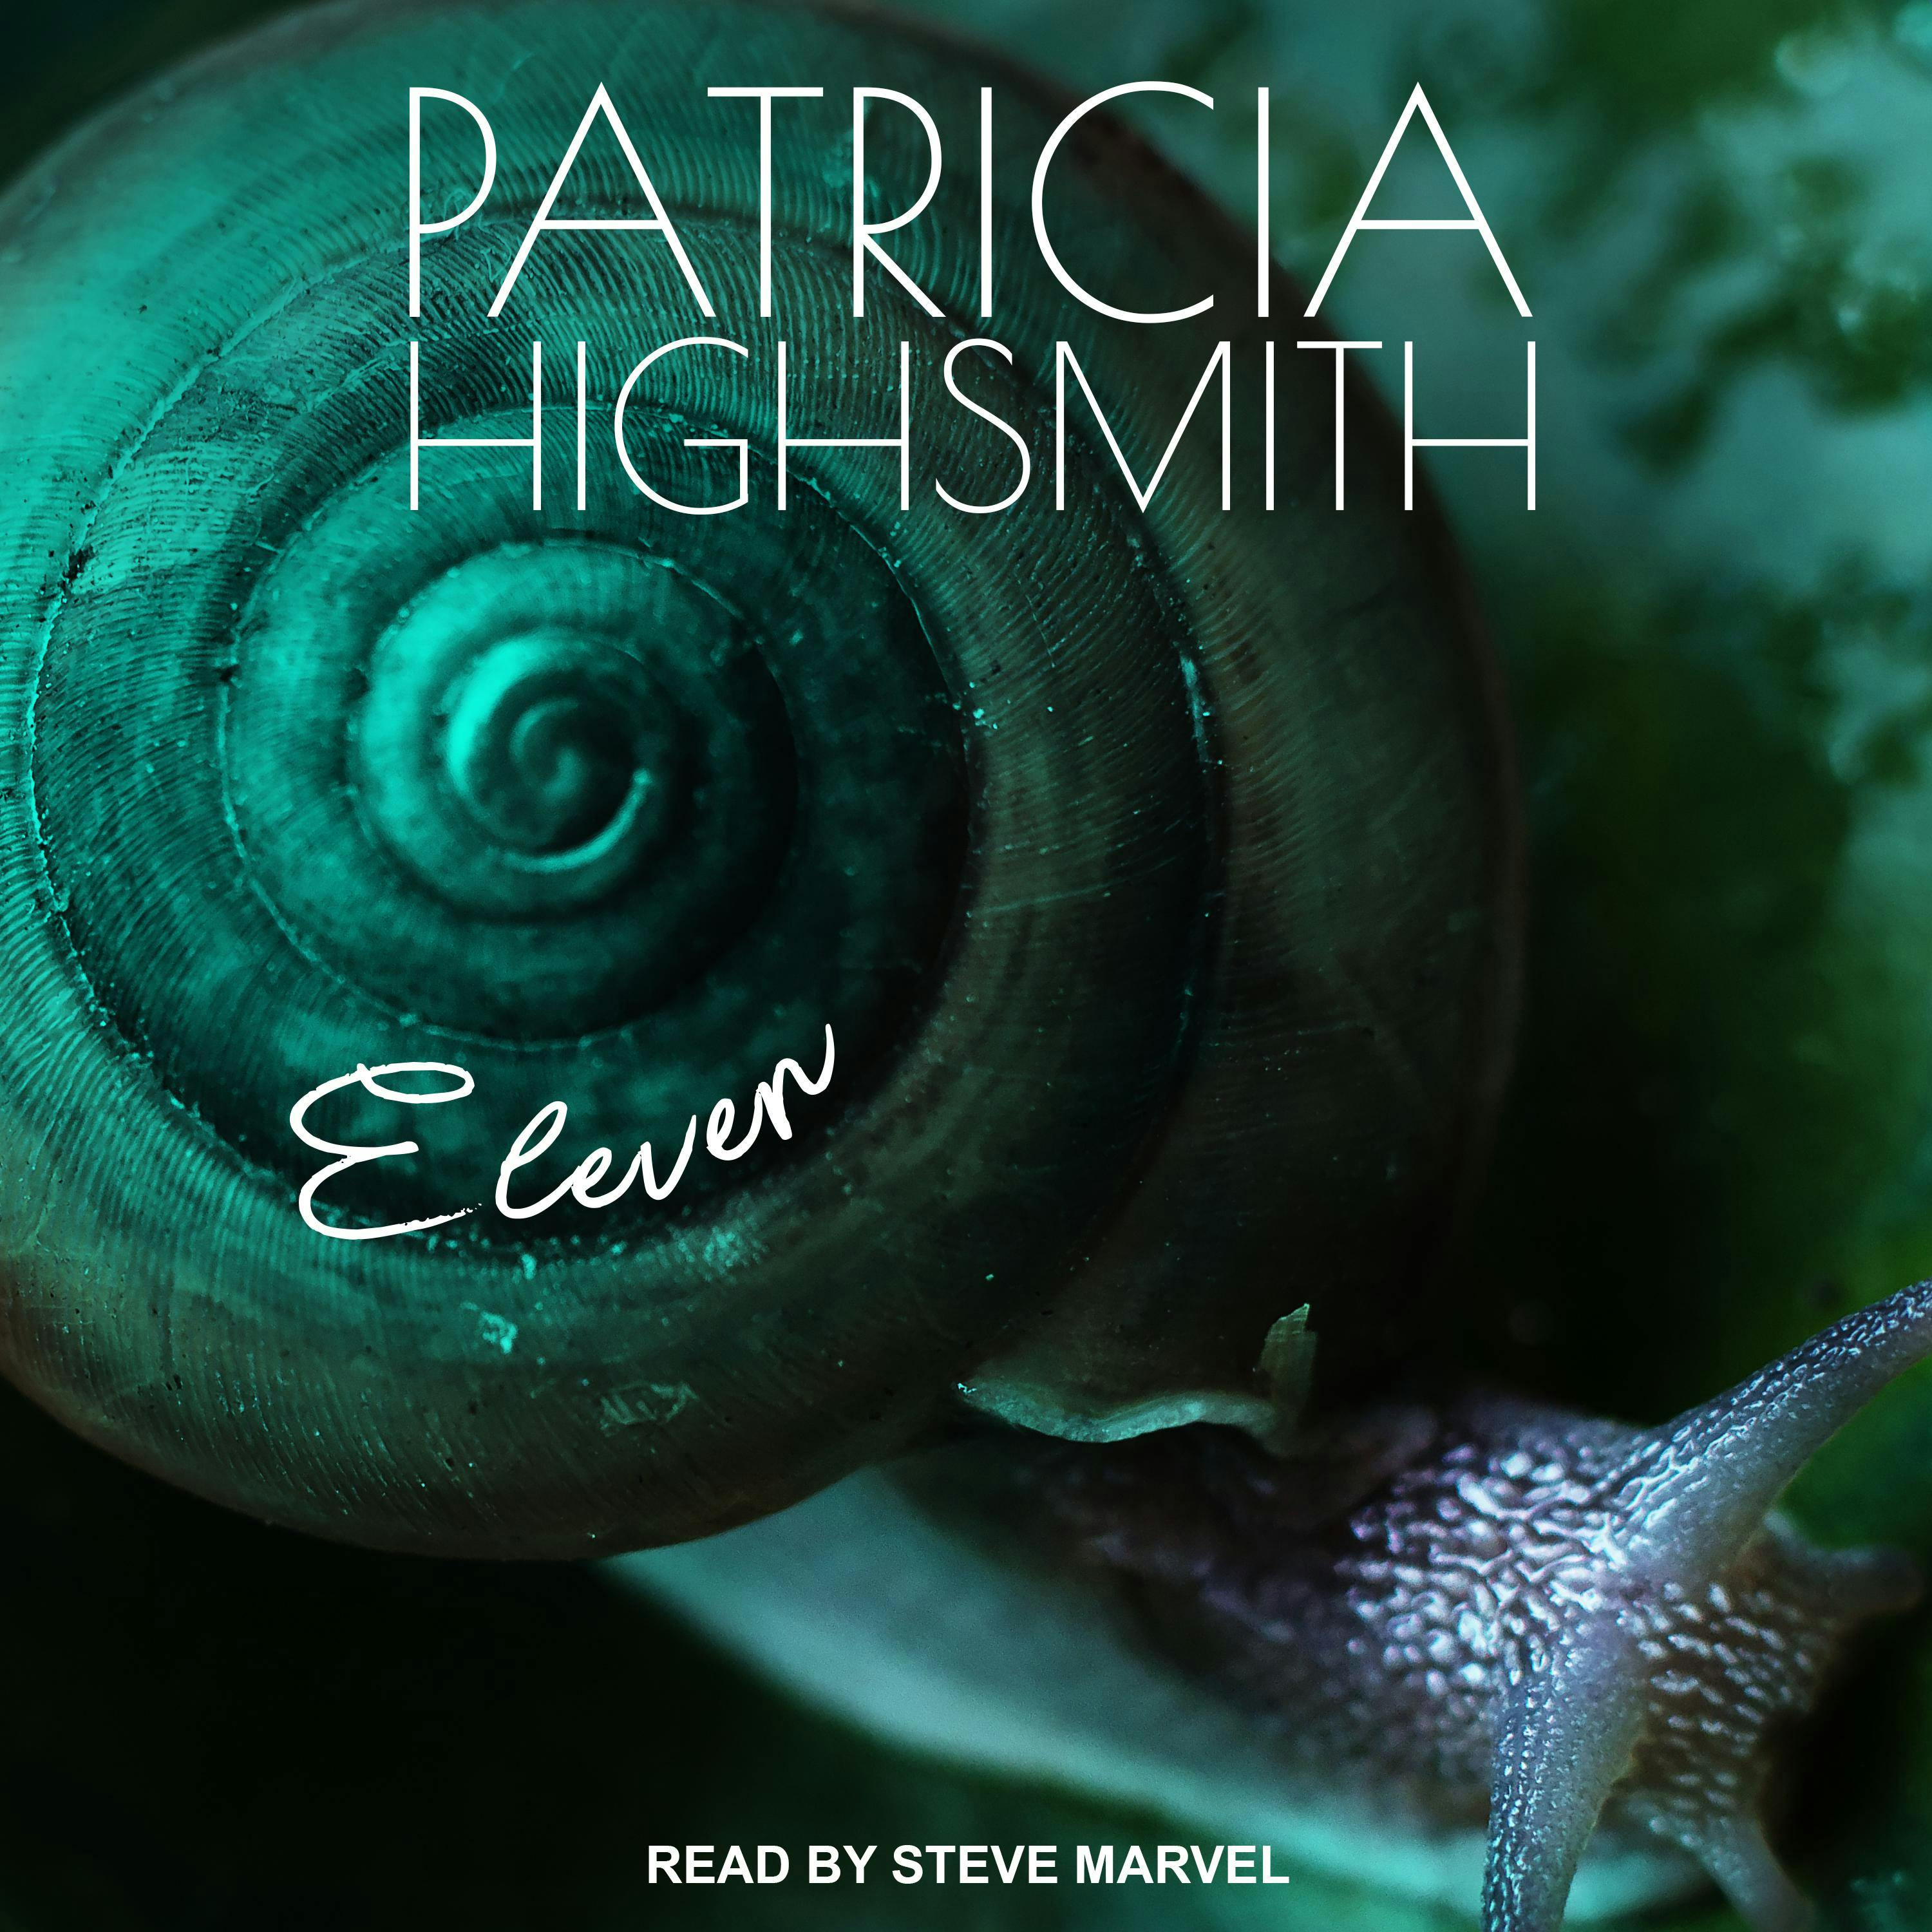 Eleven - Patricia Highsmith